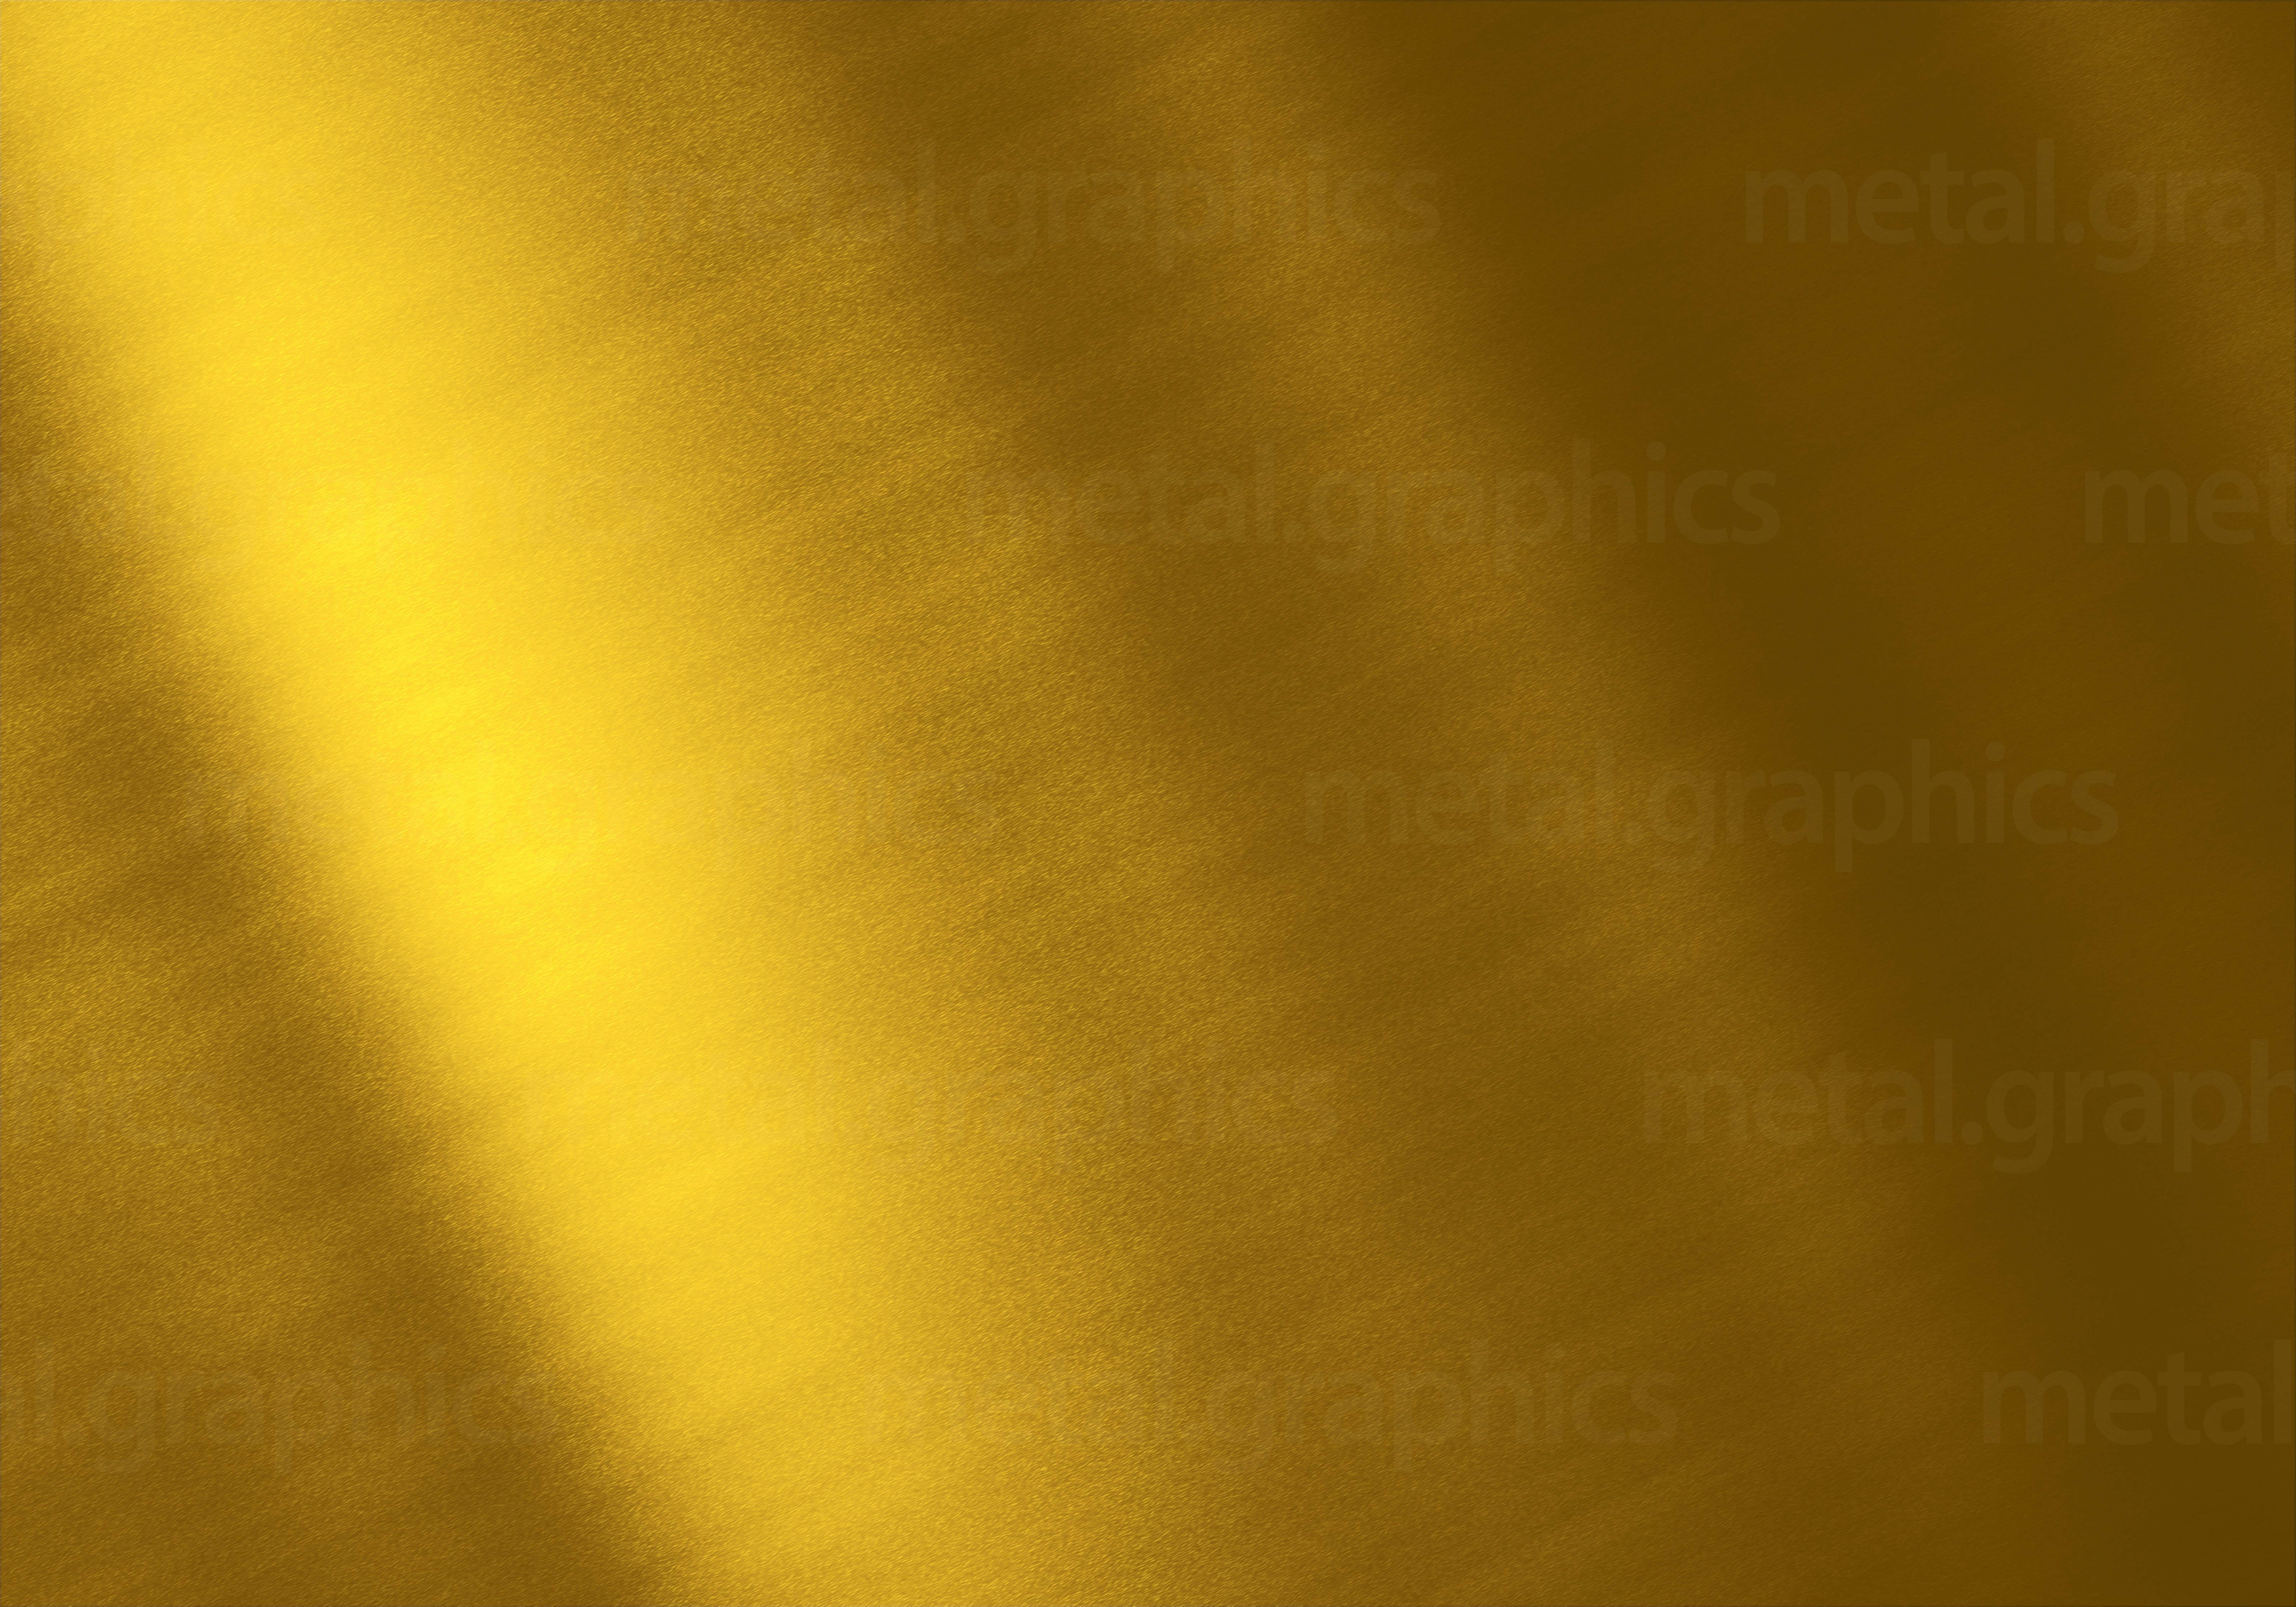 Brushed gold. Золото металлик lx19240. Золото текстура. Золотистый фон. Золото цвет металла.